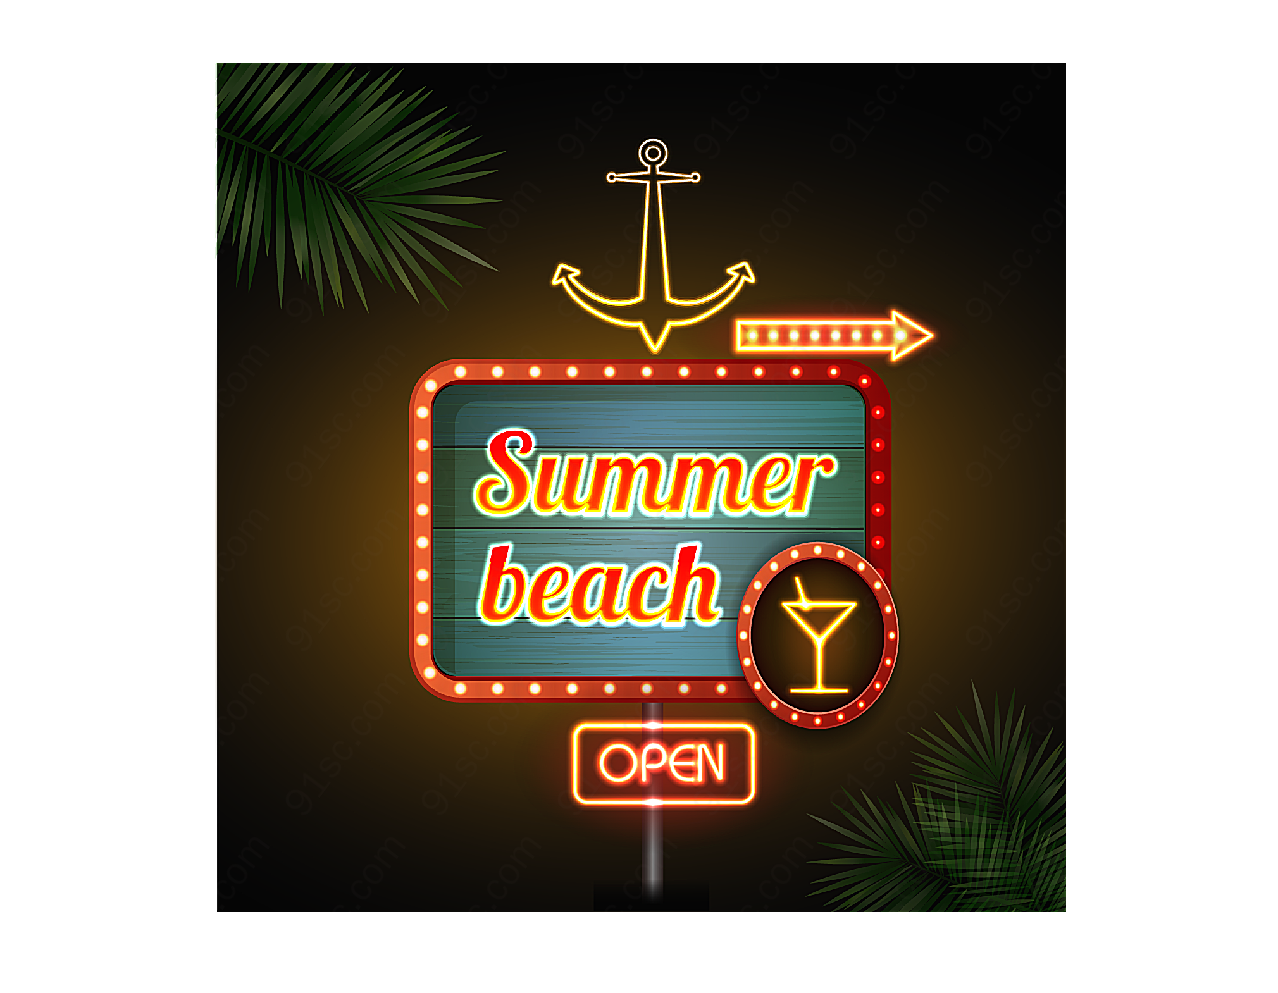 沙滩酒吧霓虹招牌平面广告